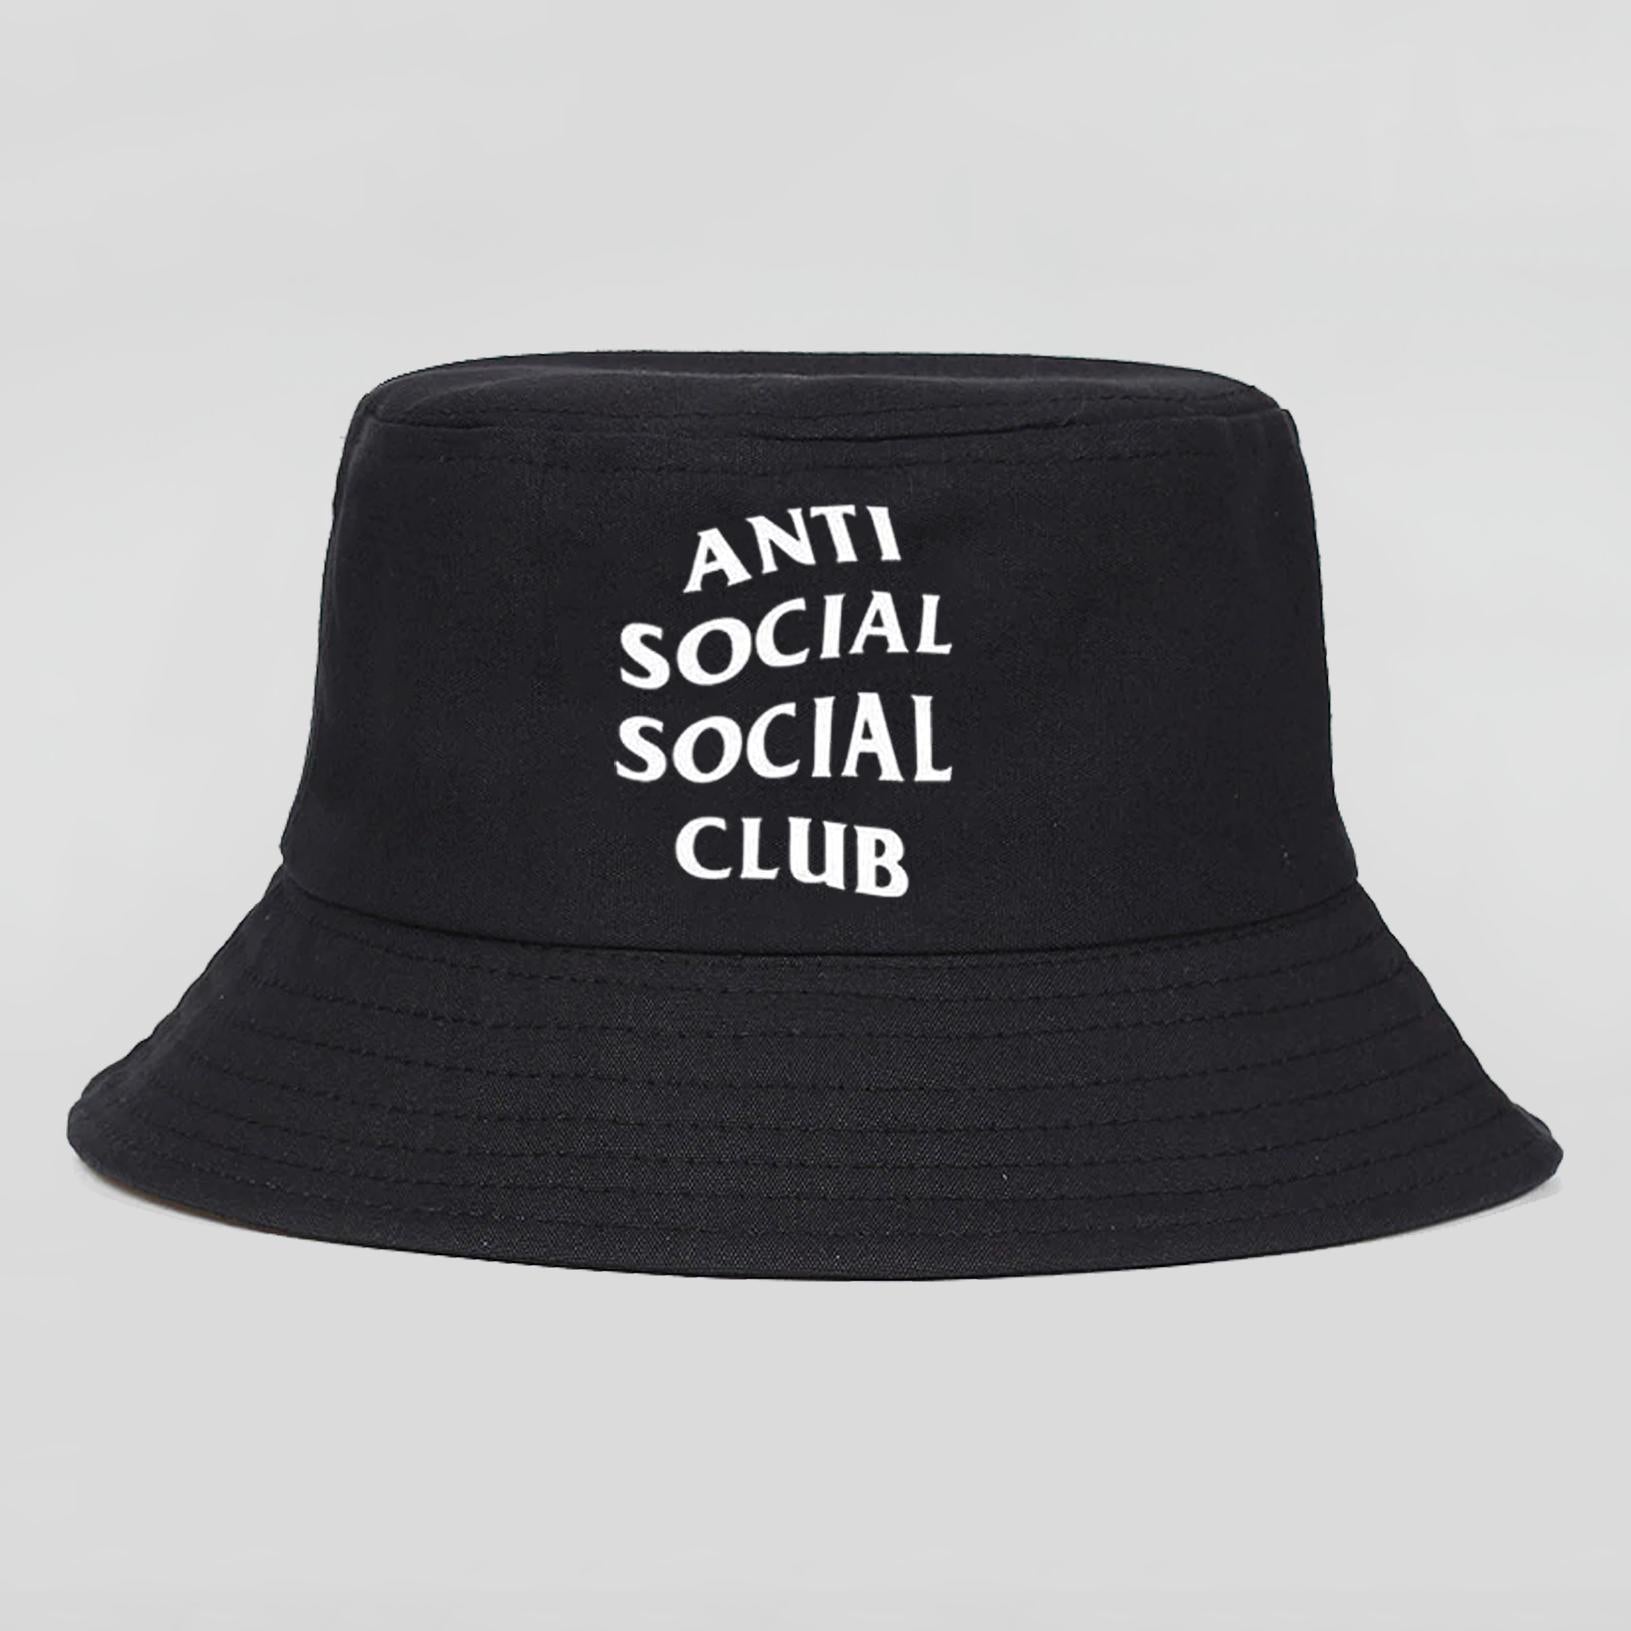 Bob ANTI SOCIAL SOCIAL CLUB